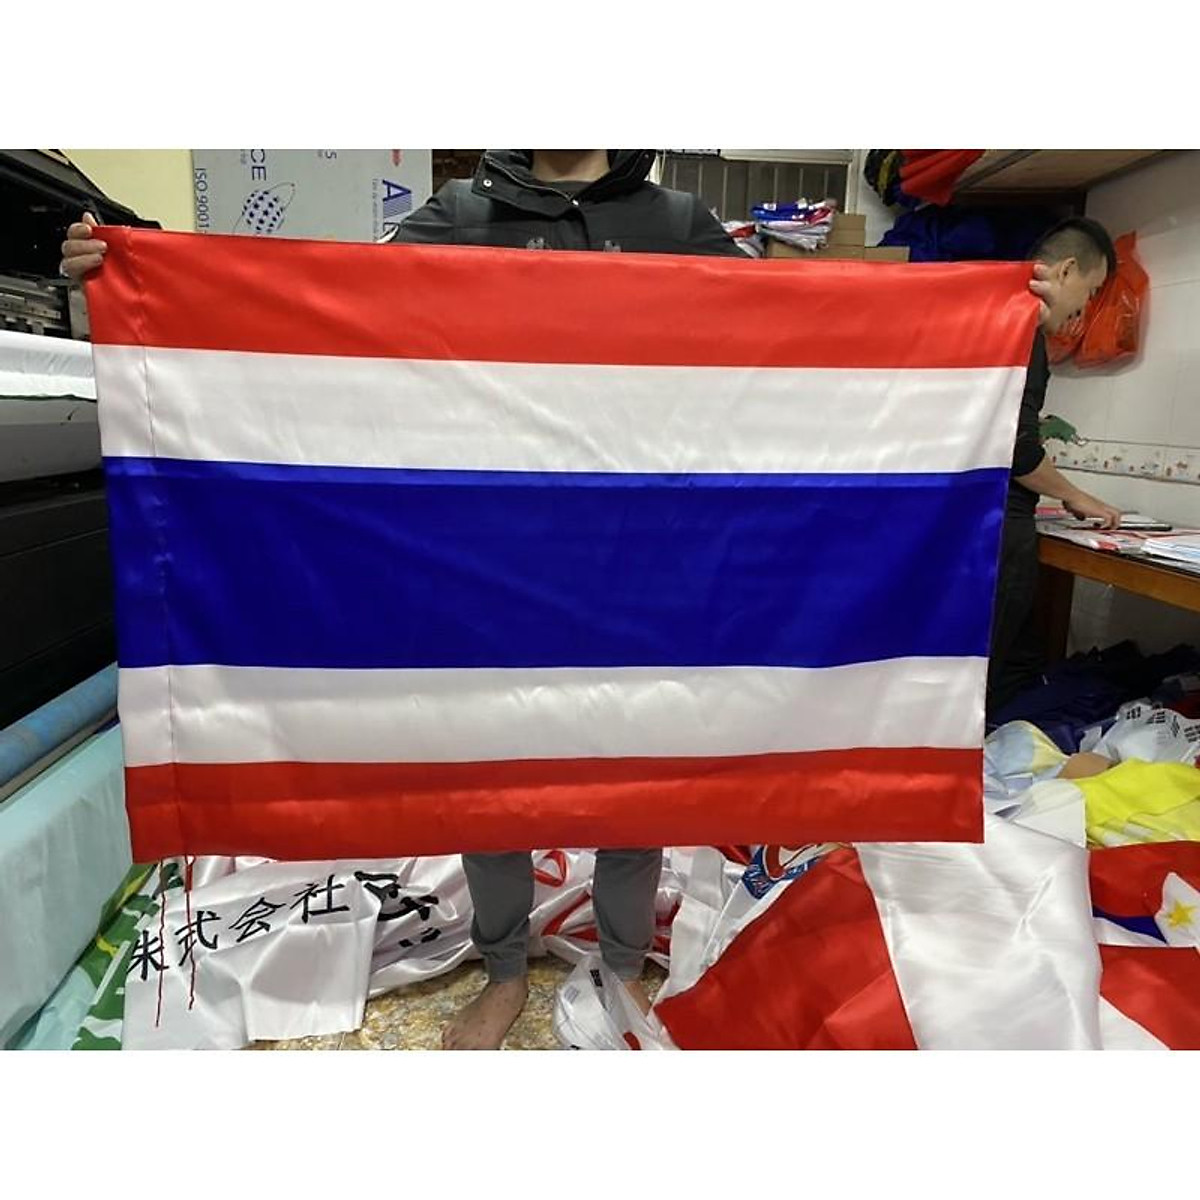 Cờ Thái Lan in 3D: Cờ Thái Lan in 3D cho phép bạn thấy rõ nét và đầy đủ các chi tiết của quốc kỳ này. Cùng xem hình ảnh Cờ Thái Lan in 3D để cảm nhận sự độc đáo và ấn tượng của nó, giúp nâng cao thêm kỳ vọng và tinh thần yêu nước của mỗi người dân Thái Lan.